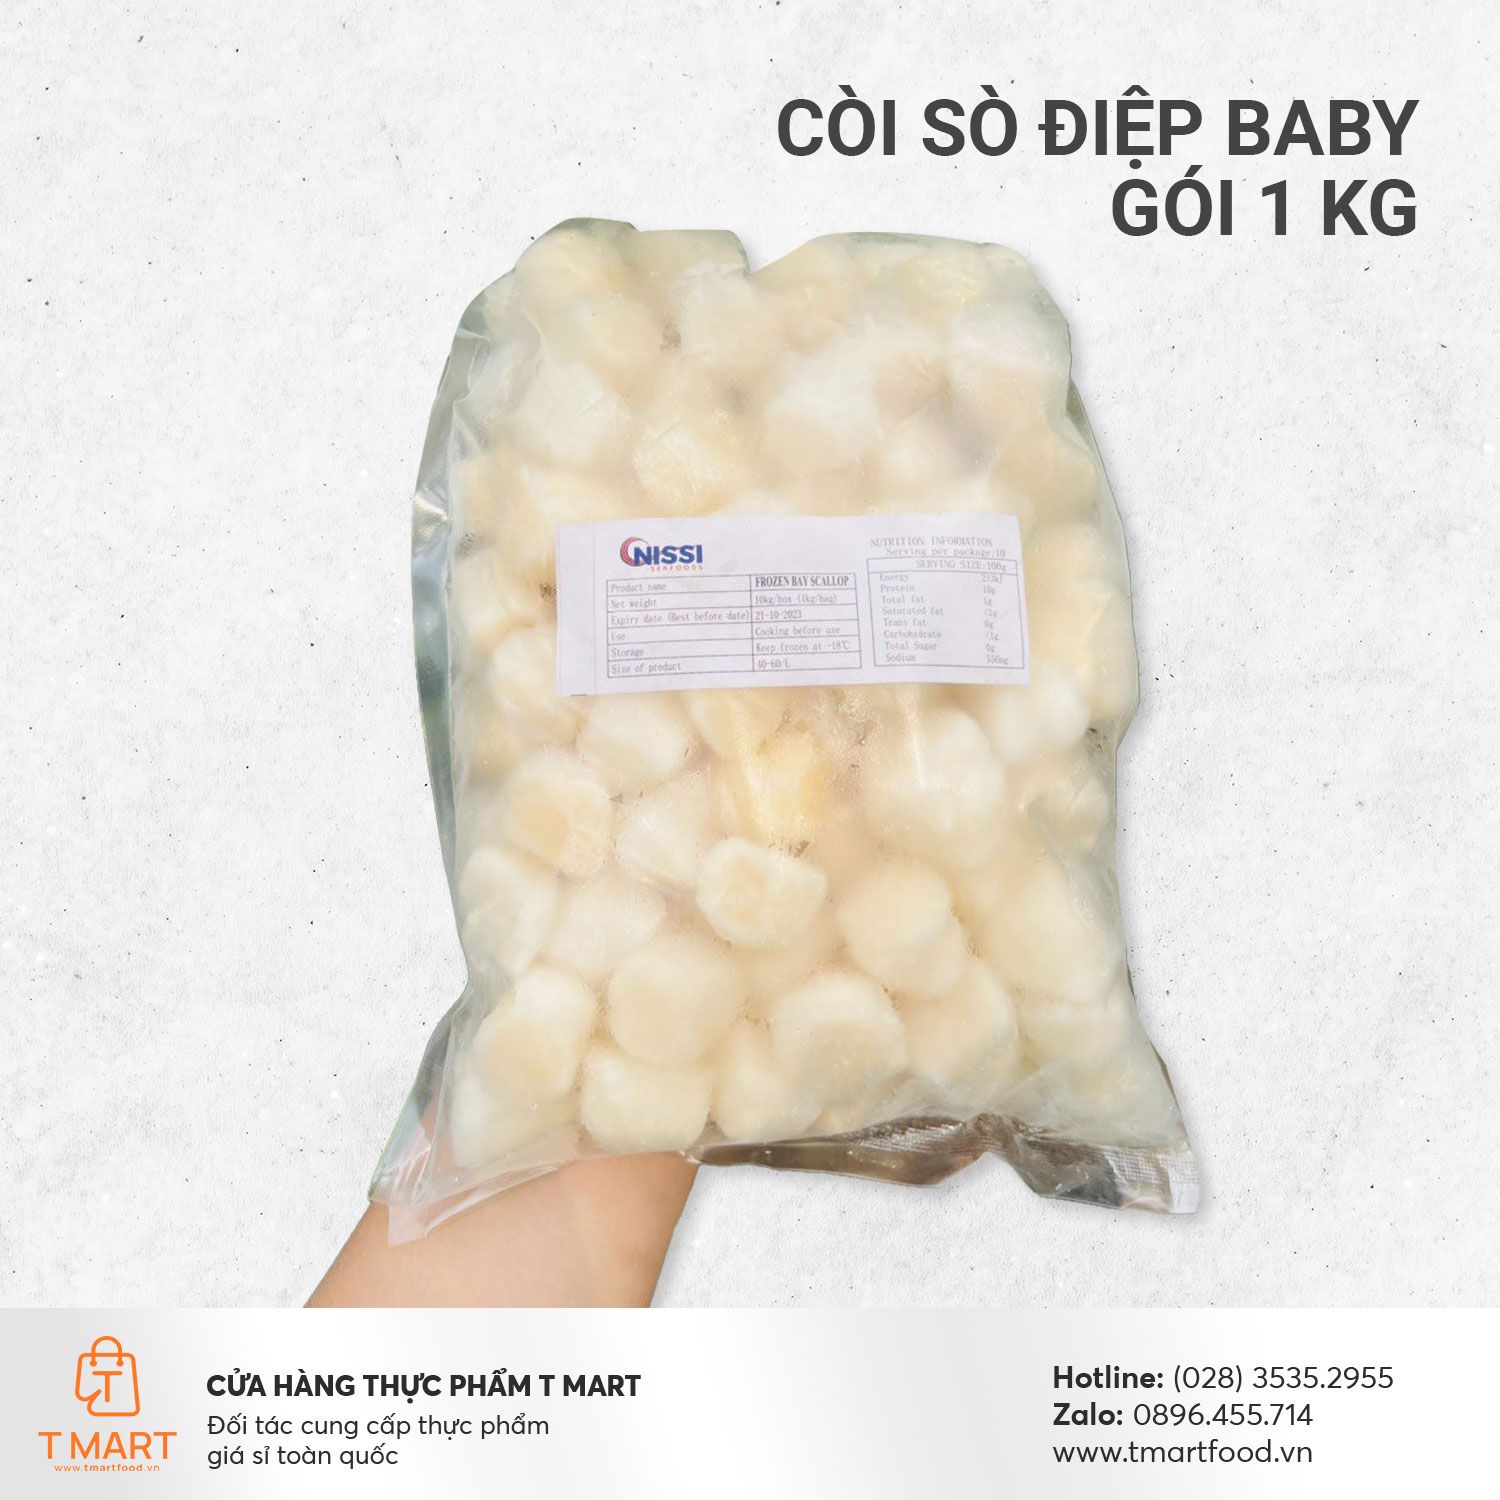  Còi Sò Điệp Baby gói 1 kg 